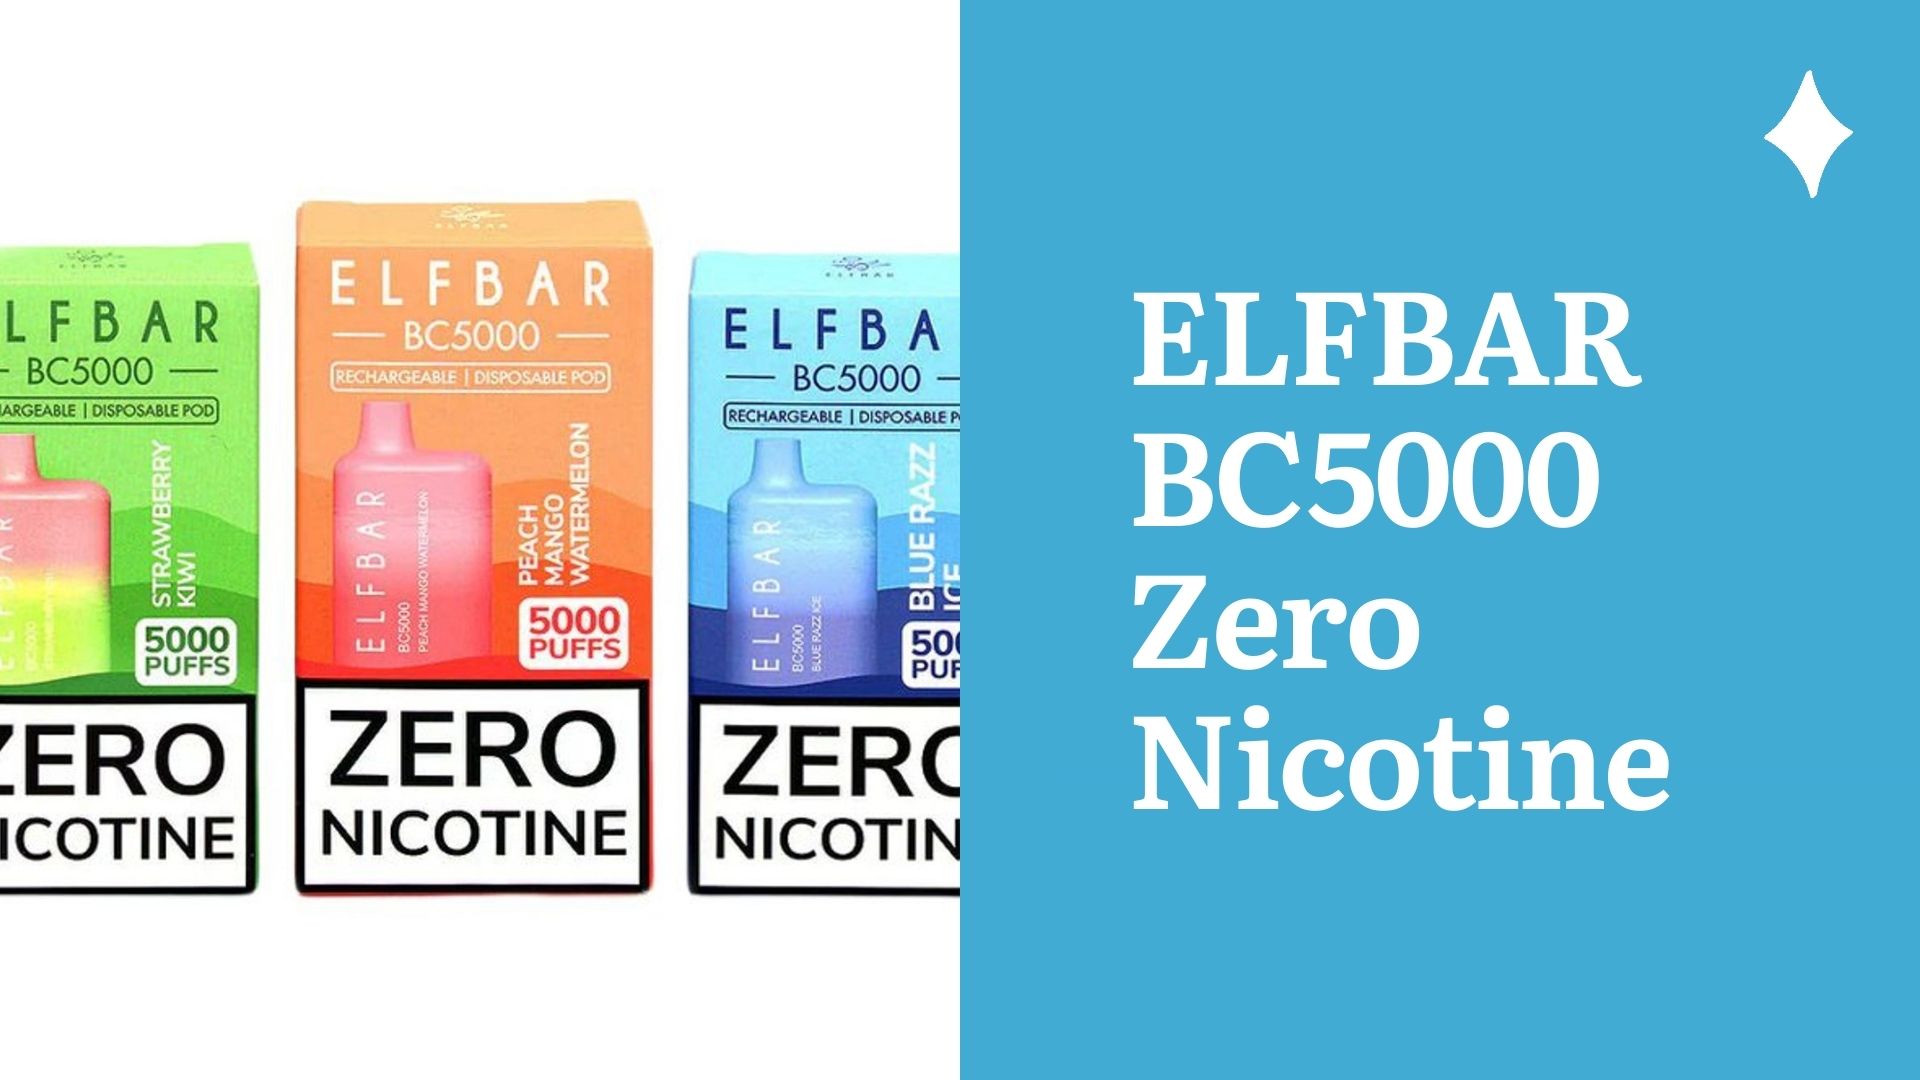 ELFBAR BC5000 Zero Nicotine